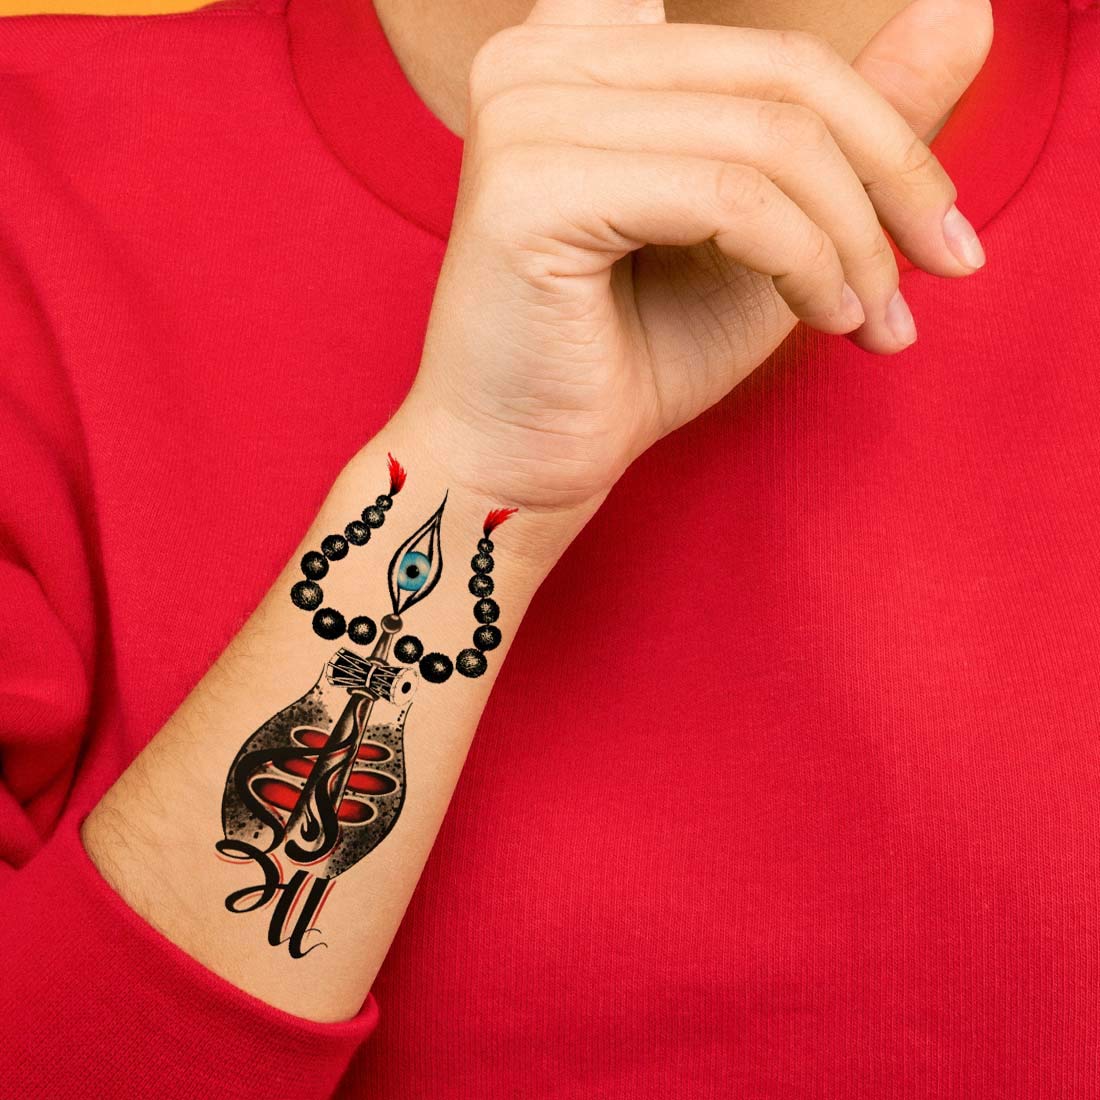 trishultattoo in Tattoos  Search in 13M Tattoos Now  Tattoodo